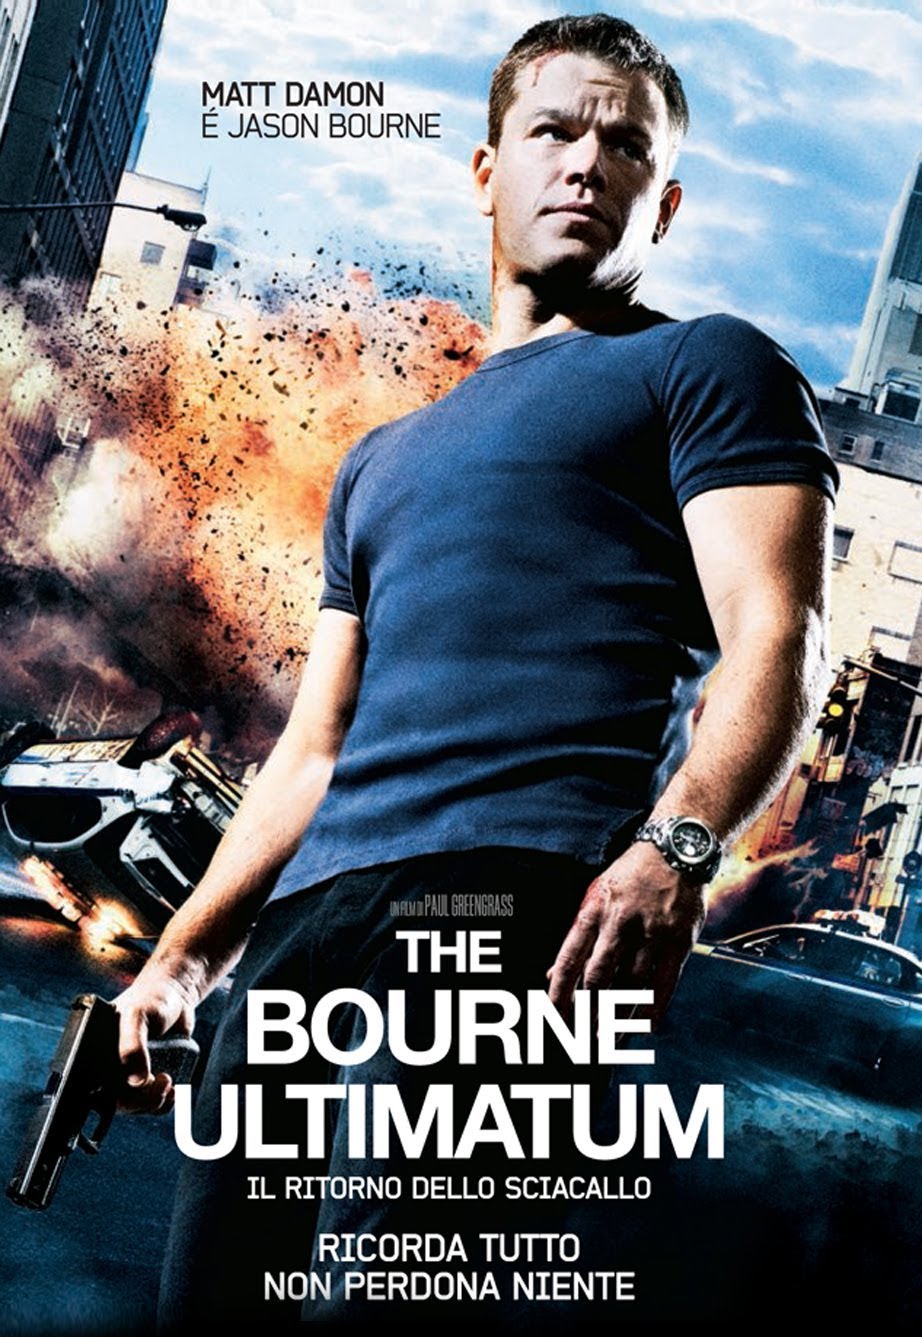 The Bourne Ultimatum – Il ritorno dello sciacallo [HD] (2007)